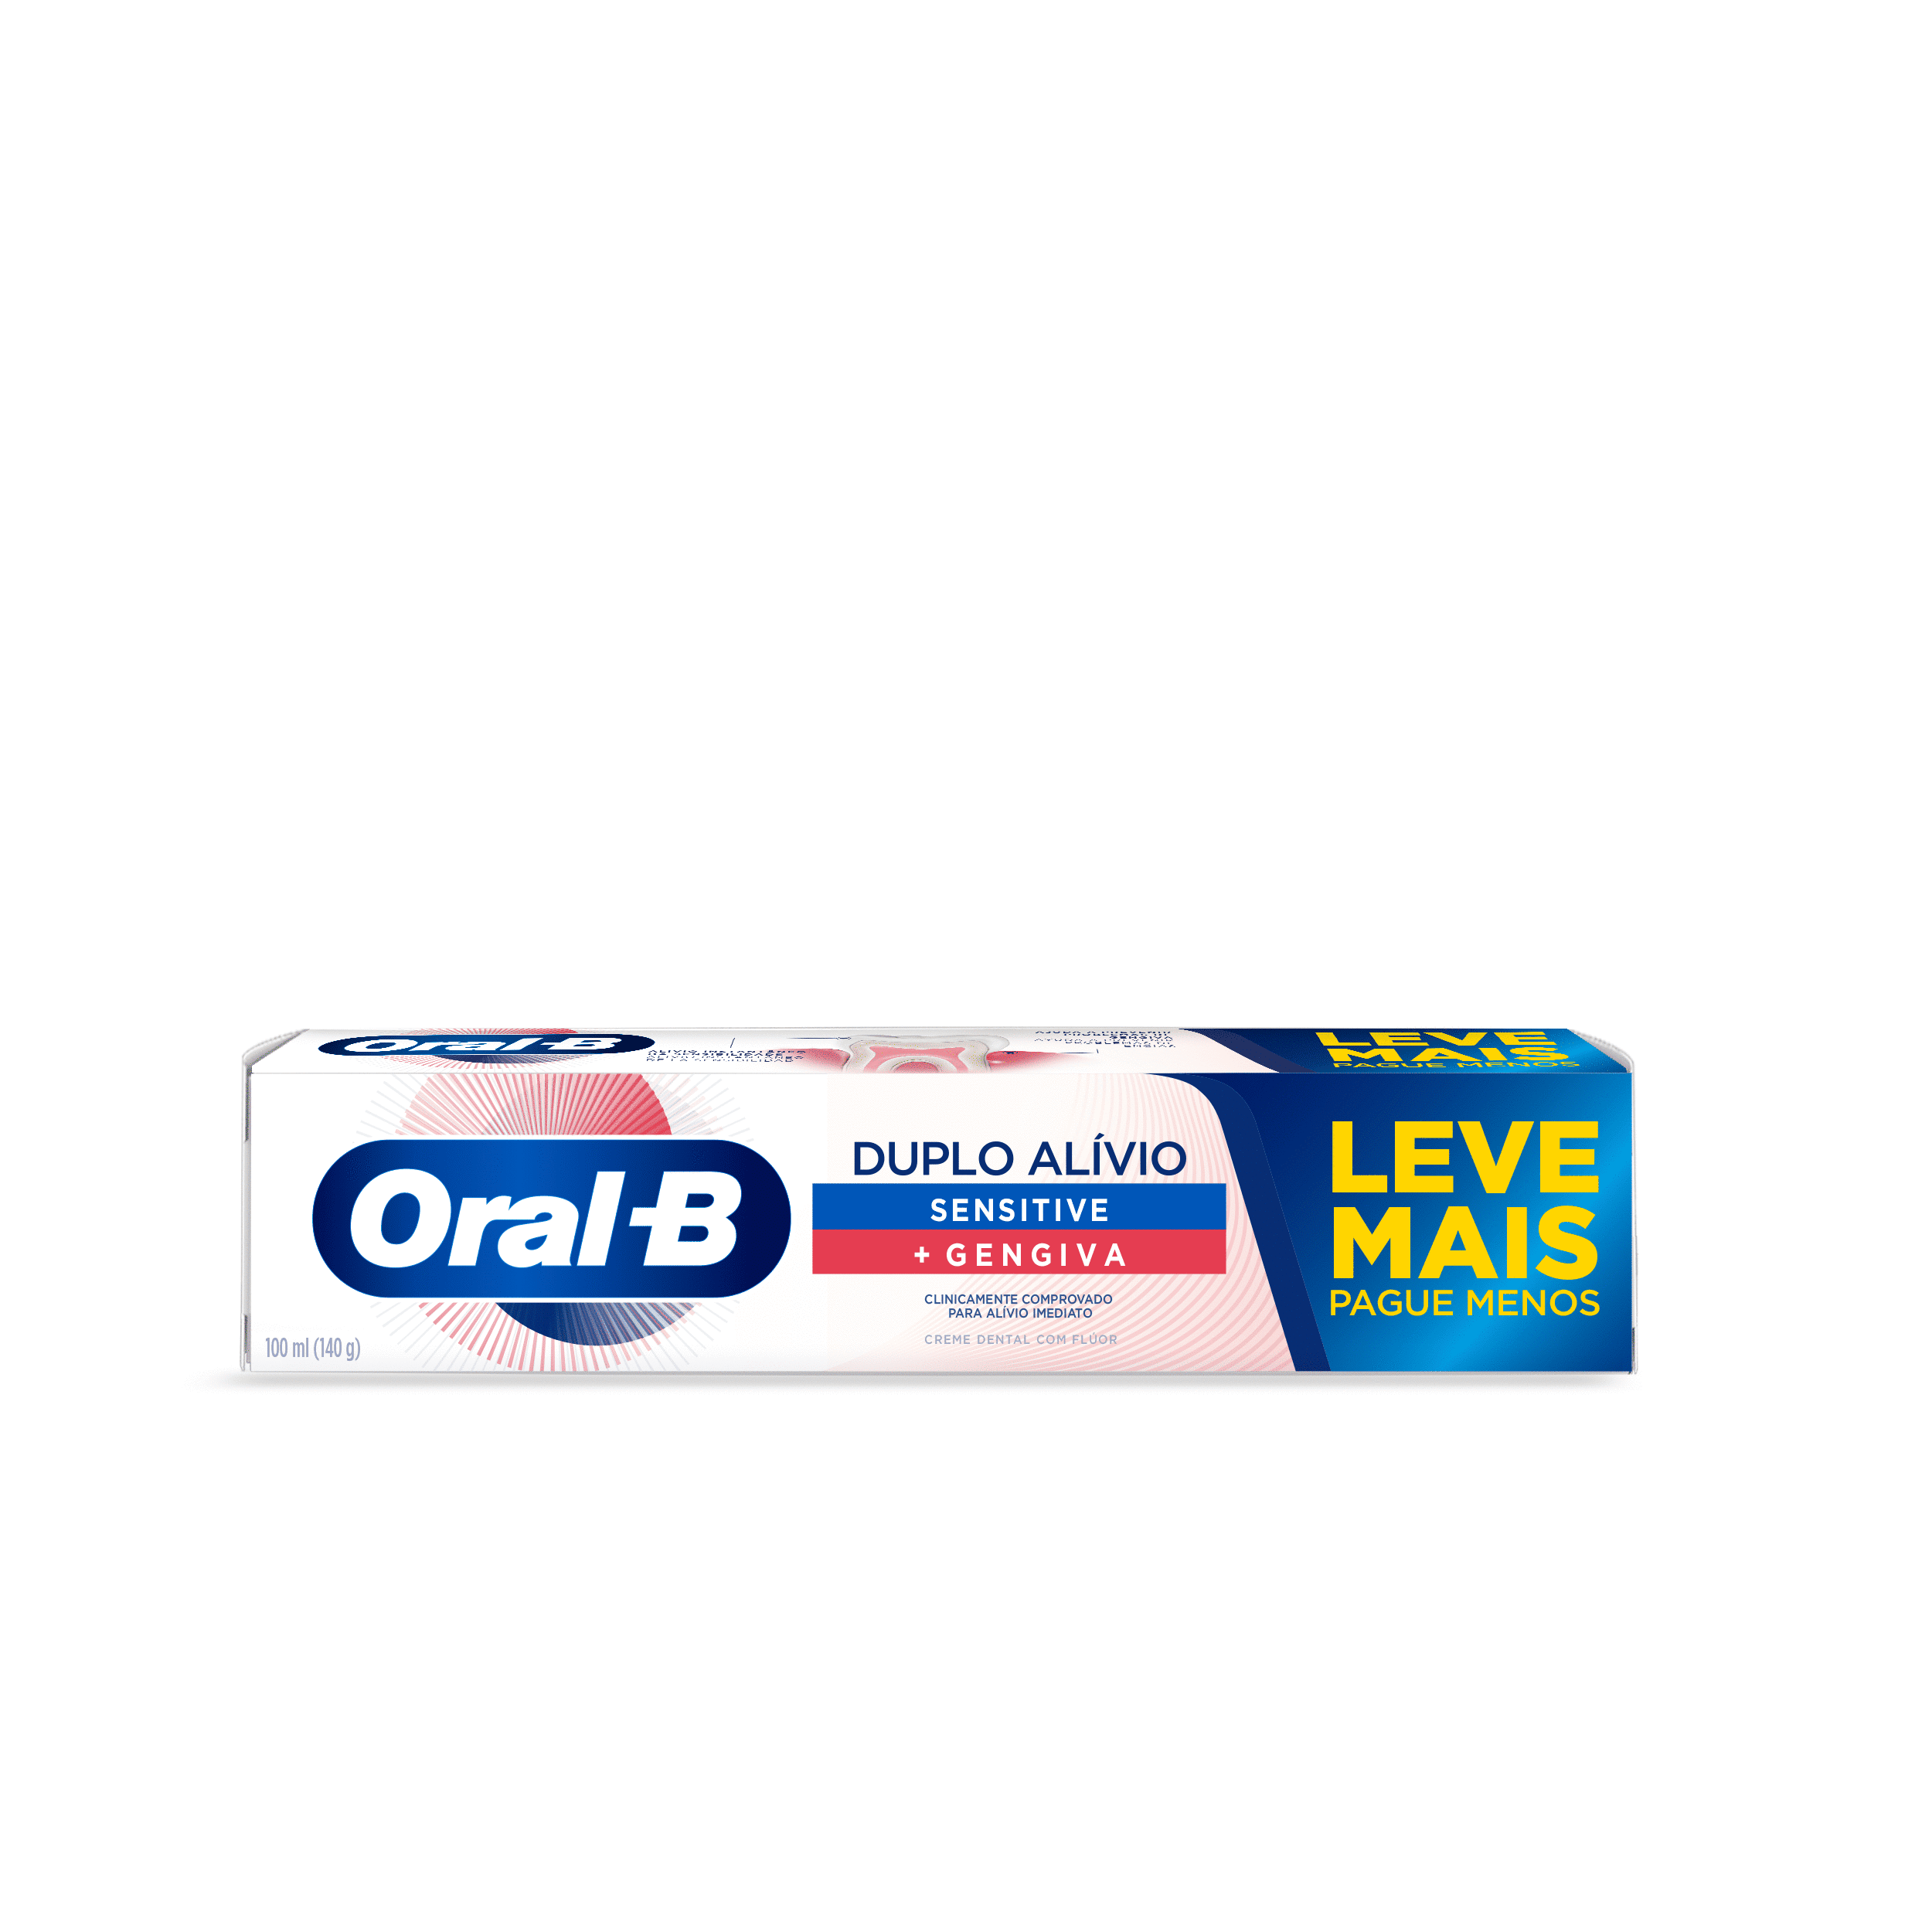 Pasta de Dente Oral-B Duplo Alívio 140g